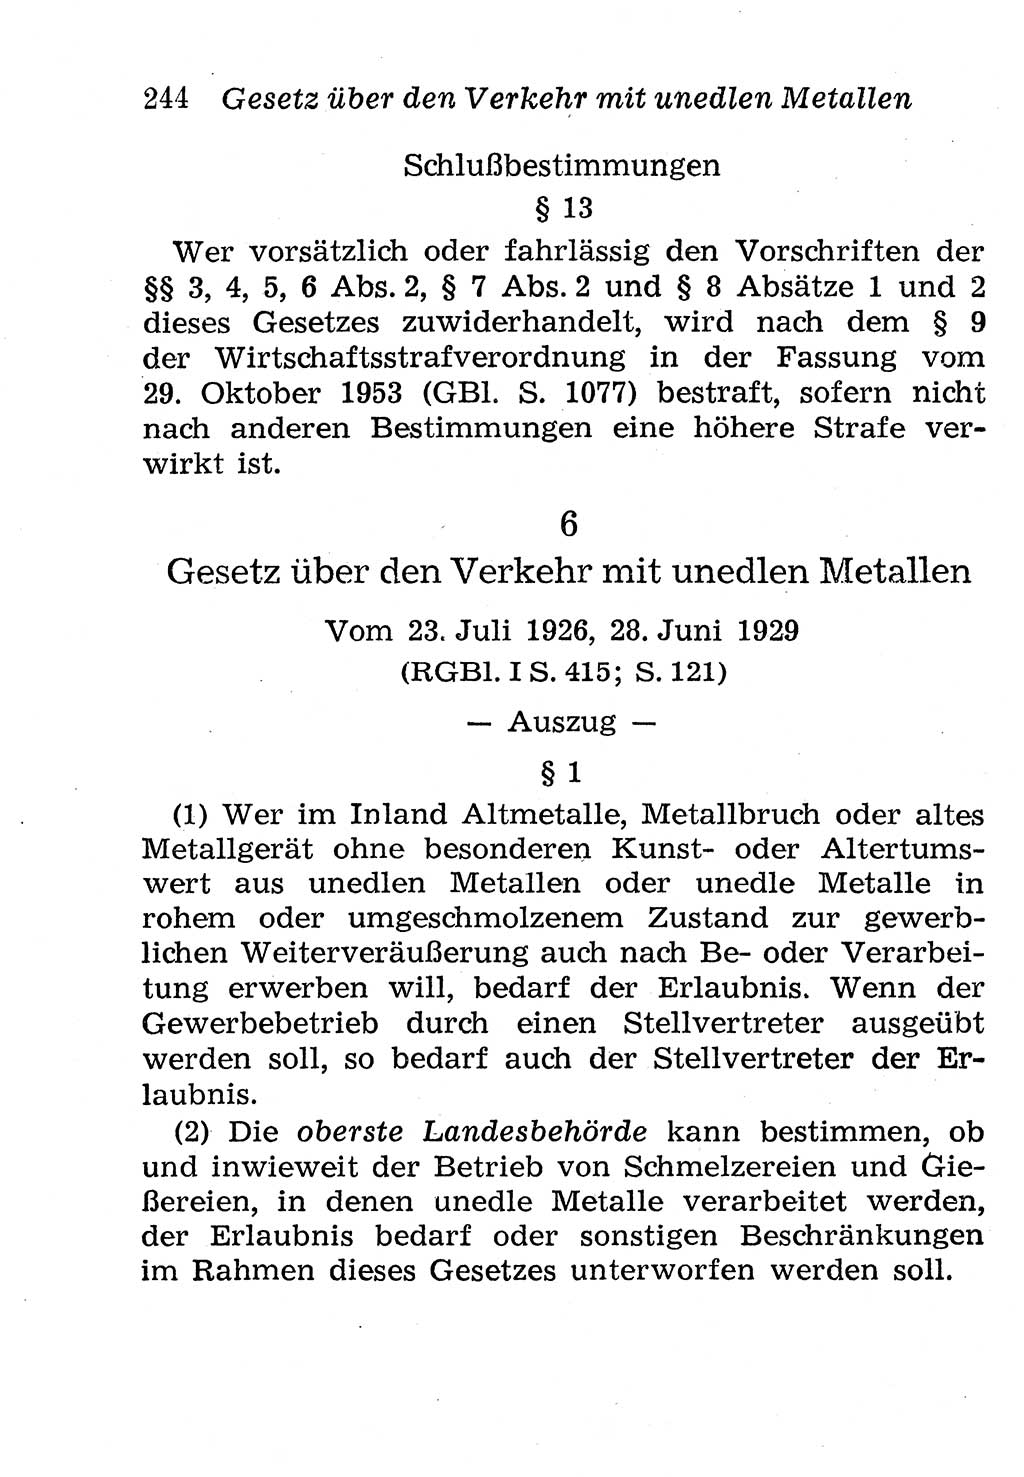 Strafgesetzbuch (StGB) und andere Strafgesetze [Deutsche Demokratische Republik (DDR)] 1958, Seite 244 (StGB Strafges. DDR 1958, S. 244)